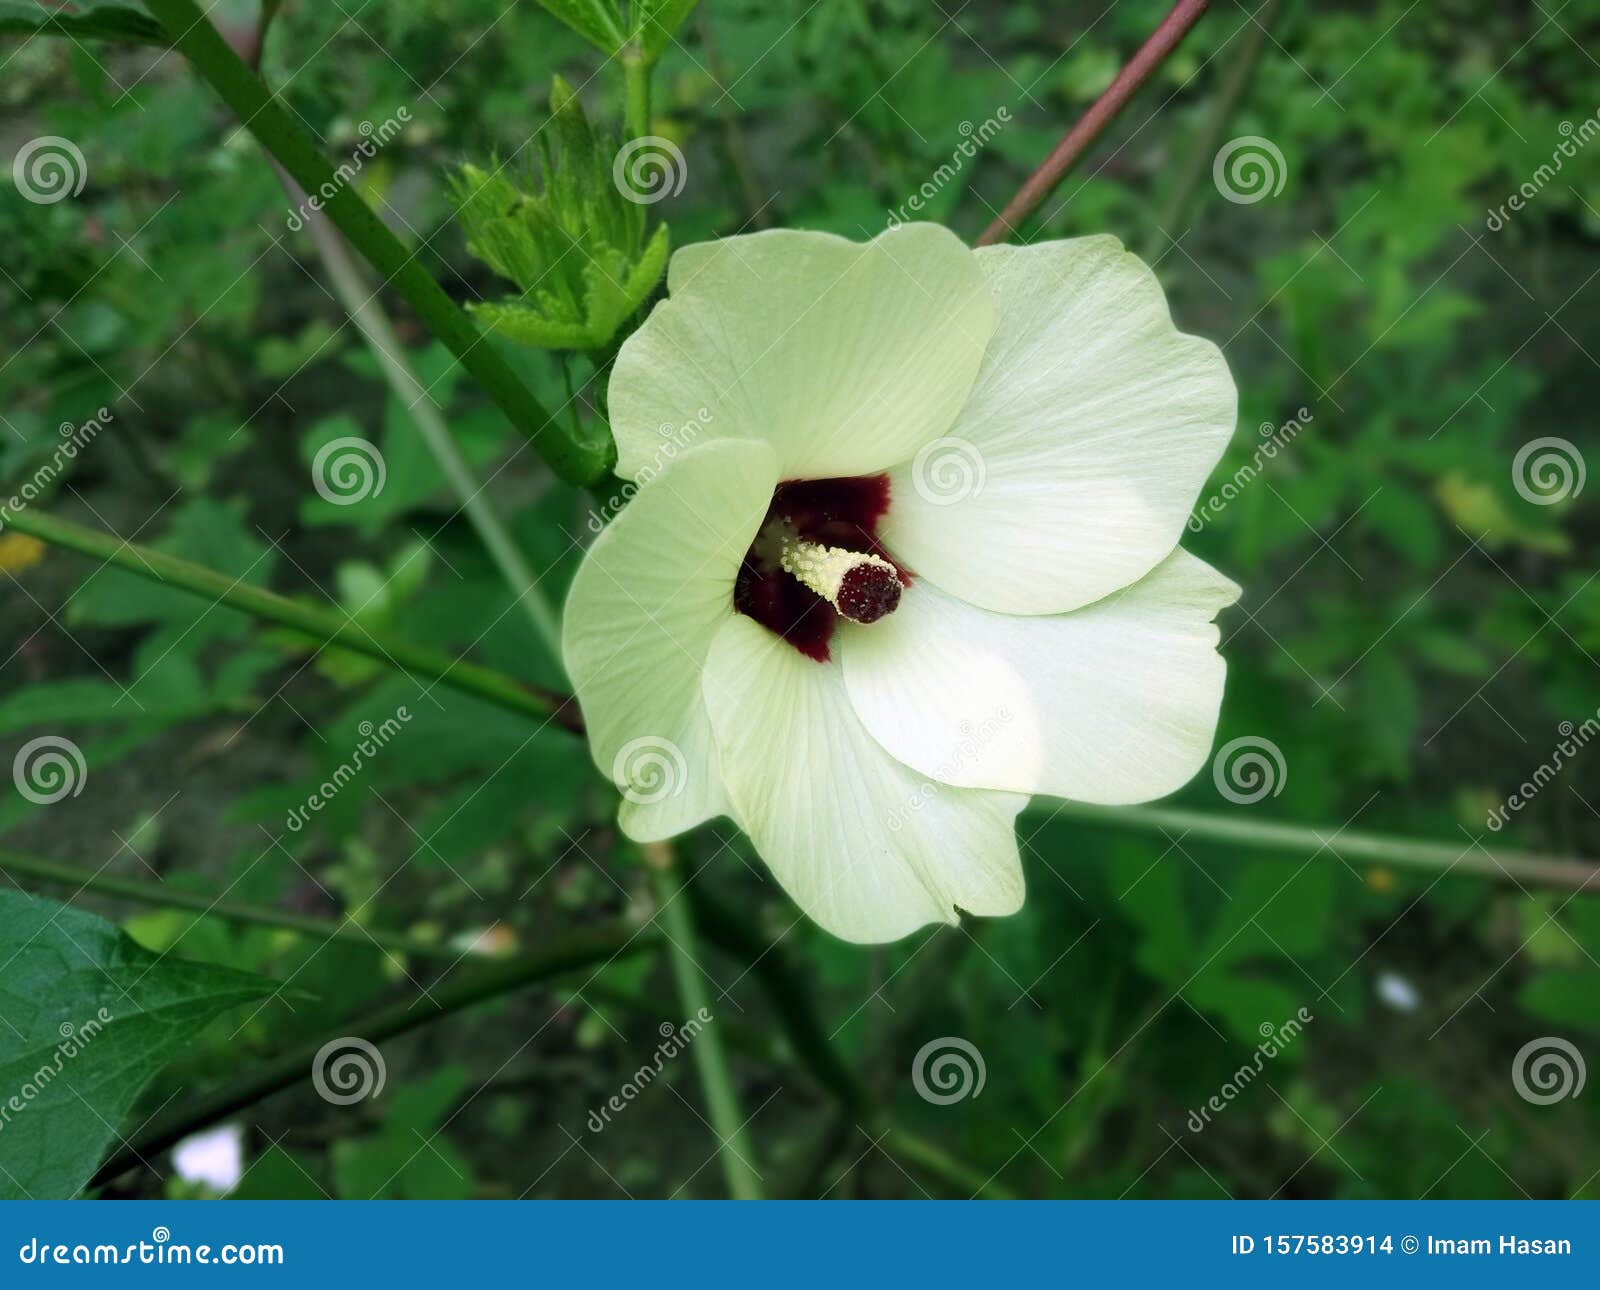 秋葵是一种在马上开花的植物 在许多英语国家 它被称为 女人的手指 或 其他 库存照片 图片包括有气候 例证